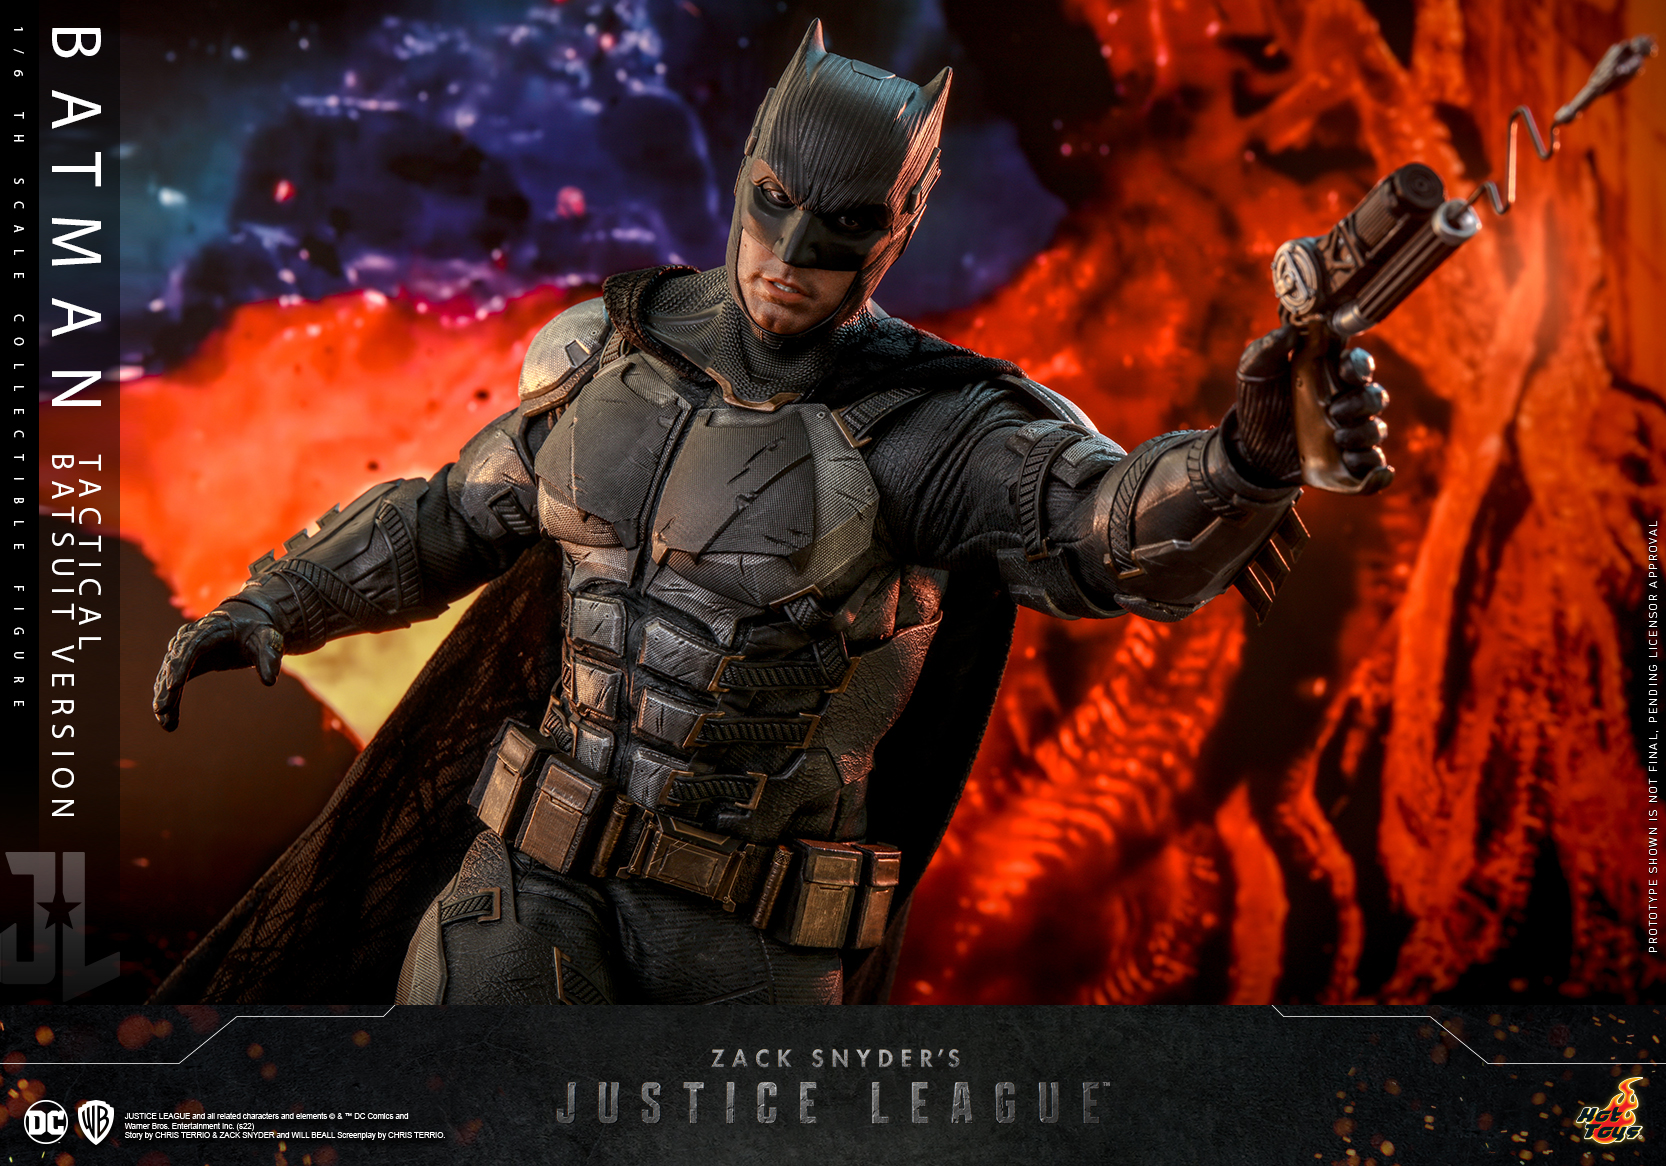 Hot Toys announces Zack Snyder's Justice League Batman figure